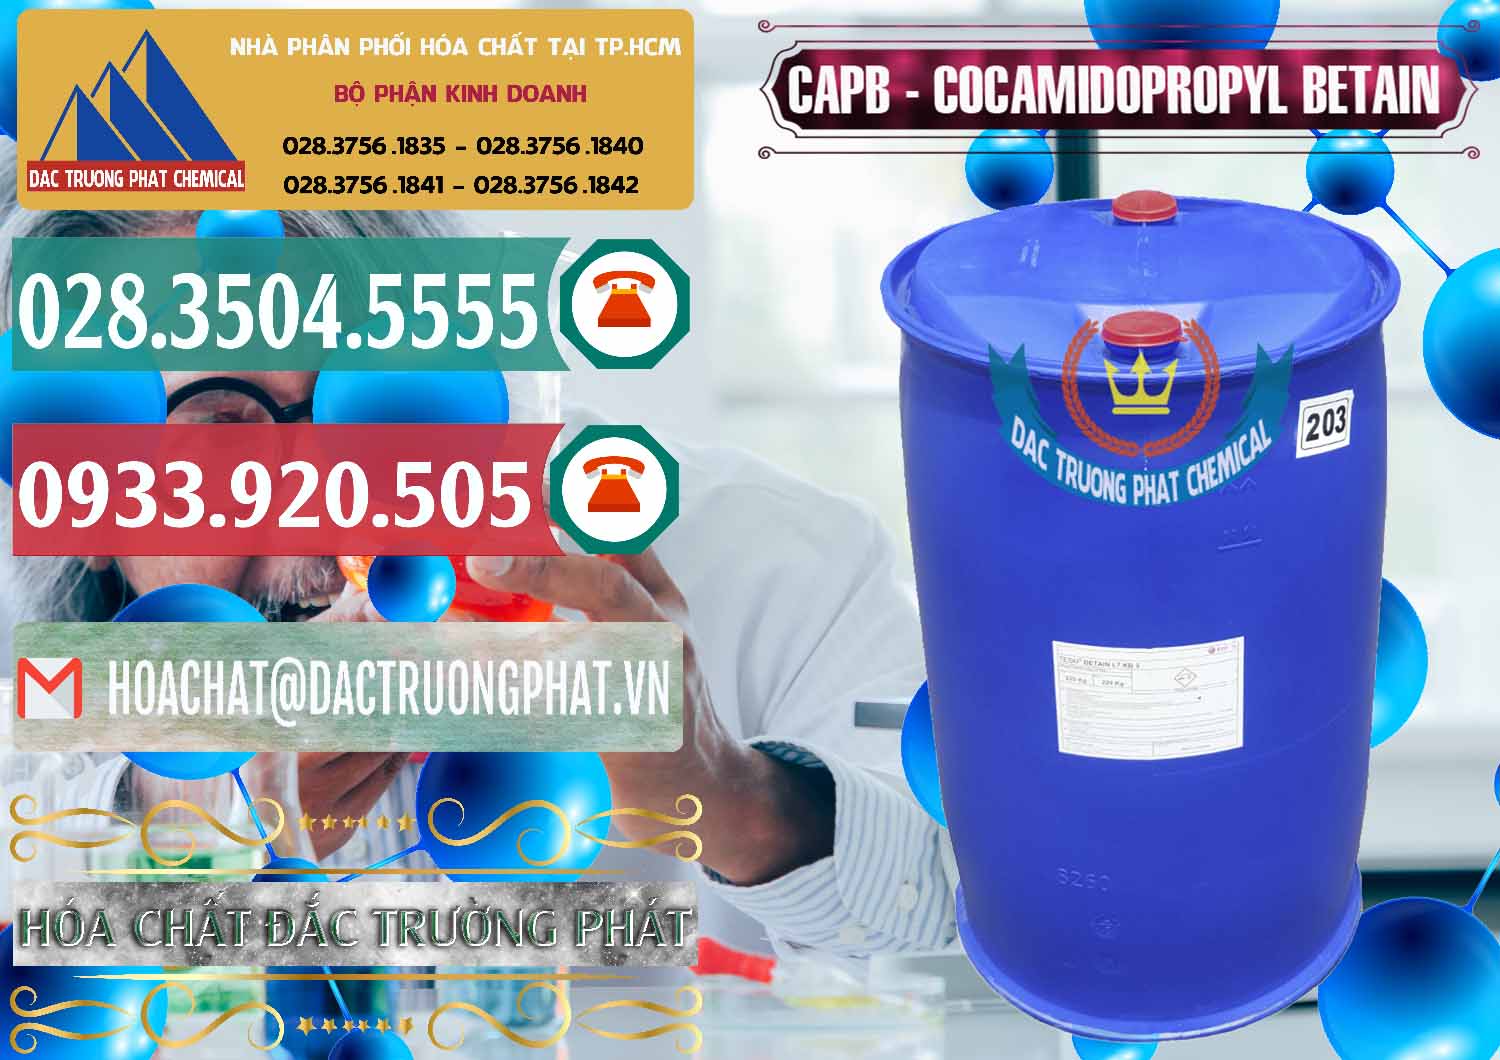 Công ty bán - phân phối Cocamidopropyl Betaine - CAPB Tego Indonesia - 0327 - Chuyên cung cấp - bán hóa chất tại TP.HCM - muabanhoachat.vn